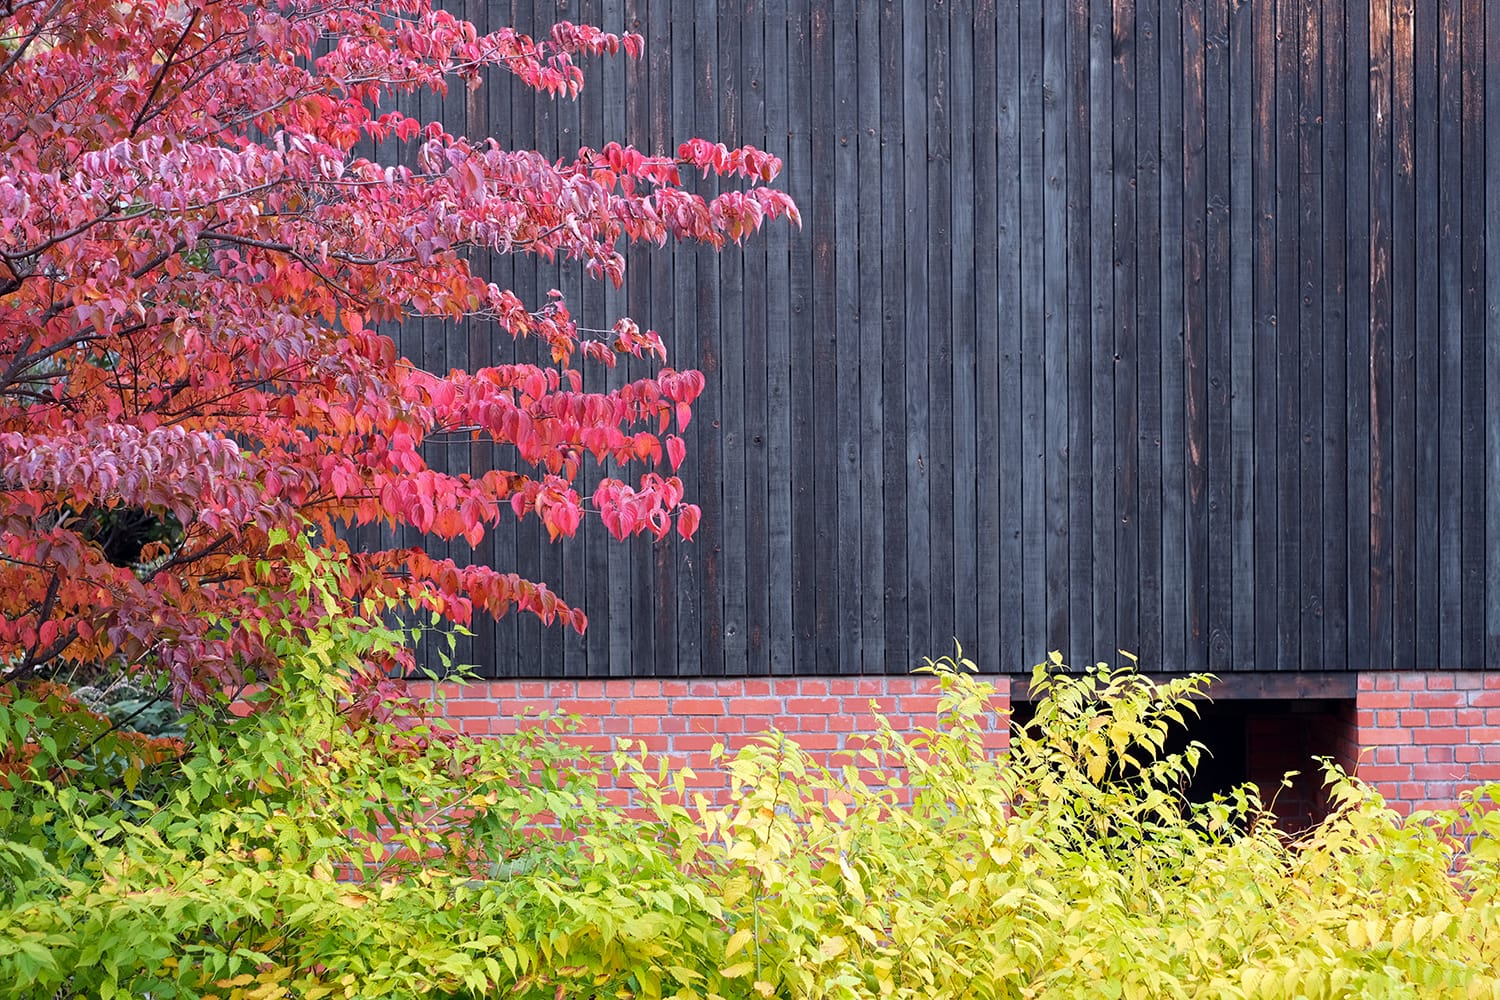 11月上旬の札幌の庭のヤマボウシの紅葉とヤマブキの黄葉